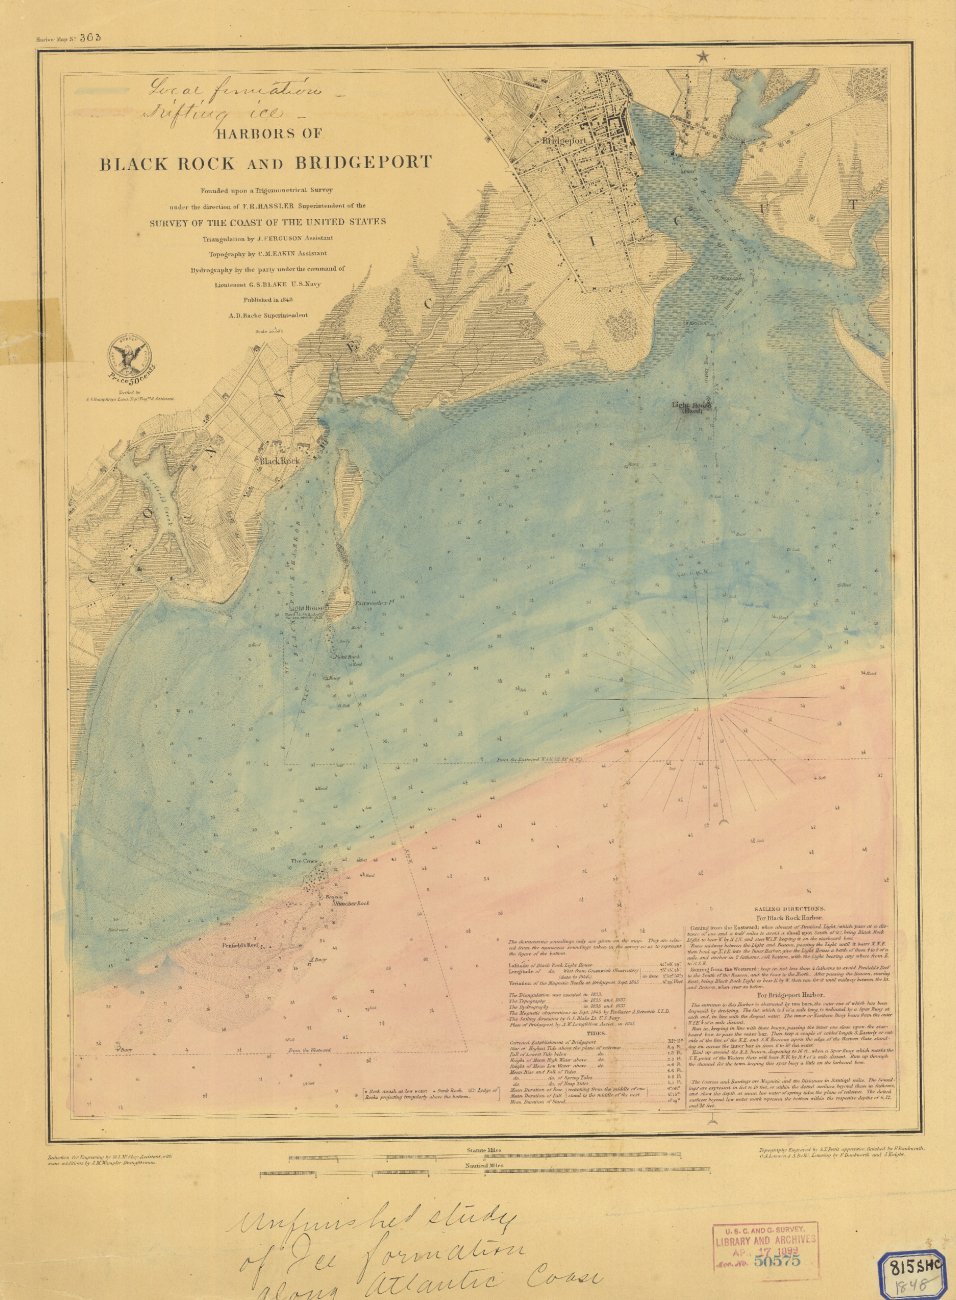 Chart of Harbors of Black Rock and Bridgeport